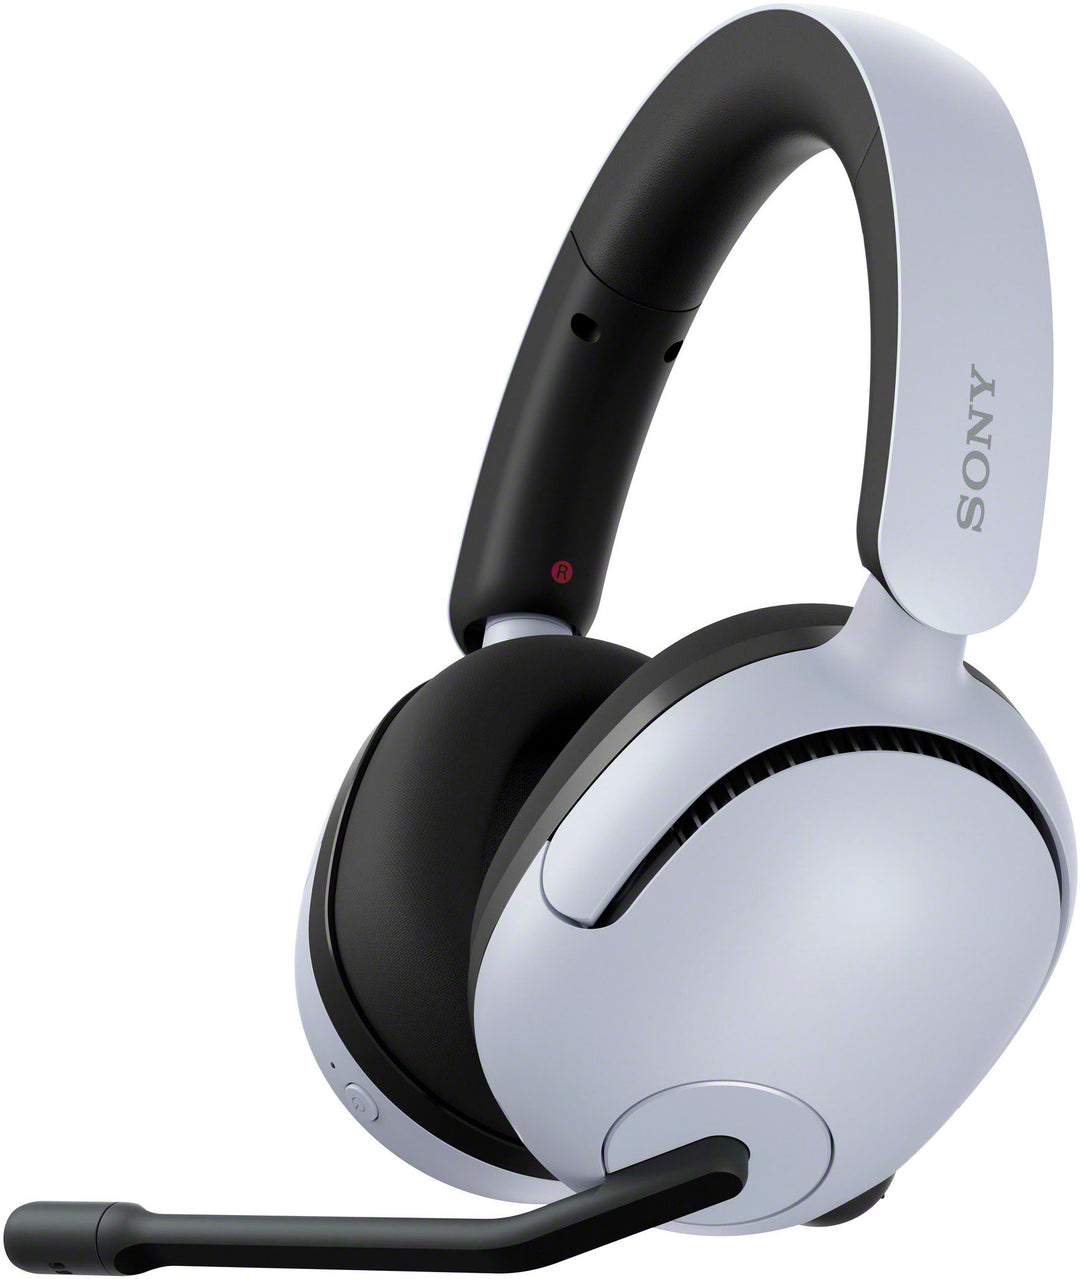 Sony - INZONE H5 Wireless Gaming Headset - White_6